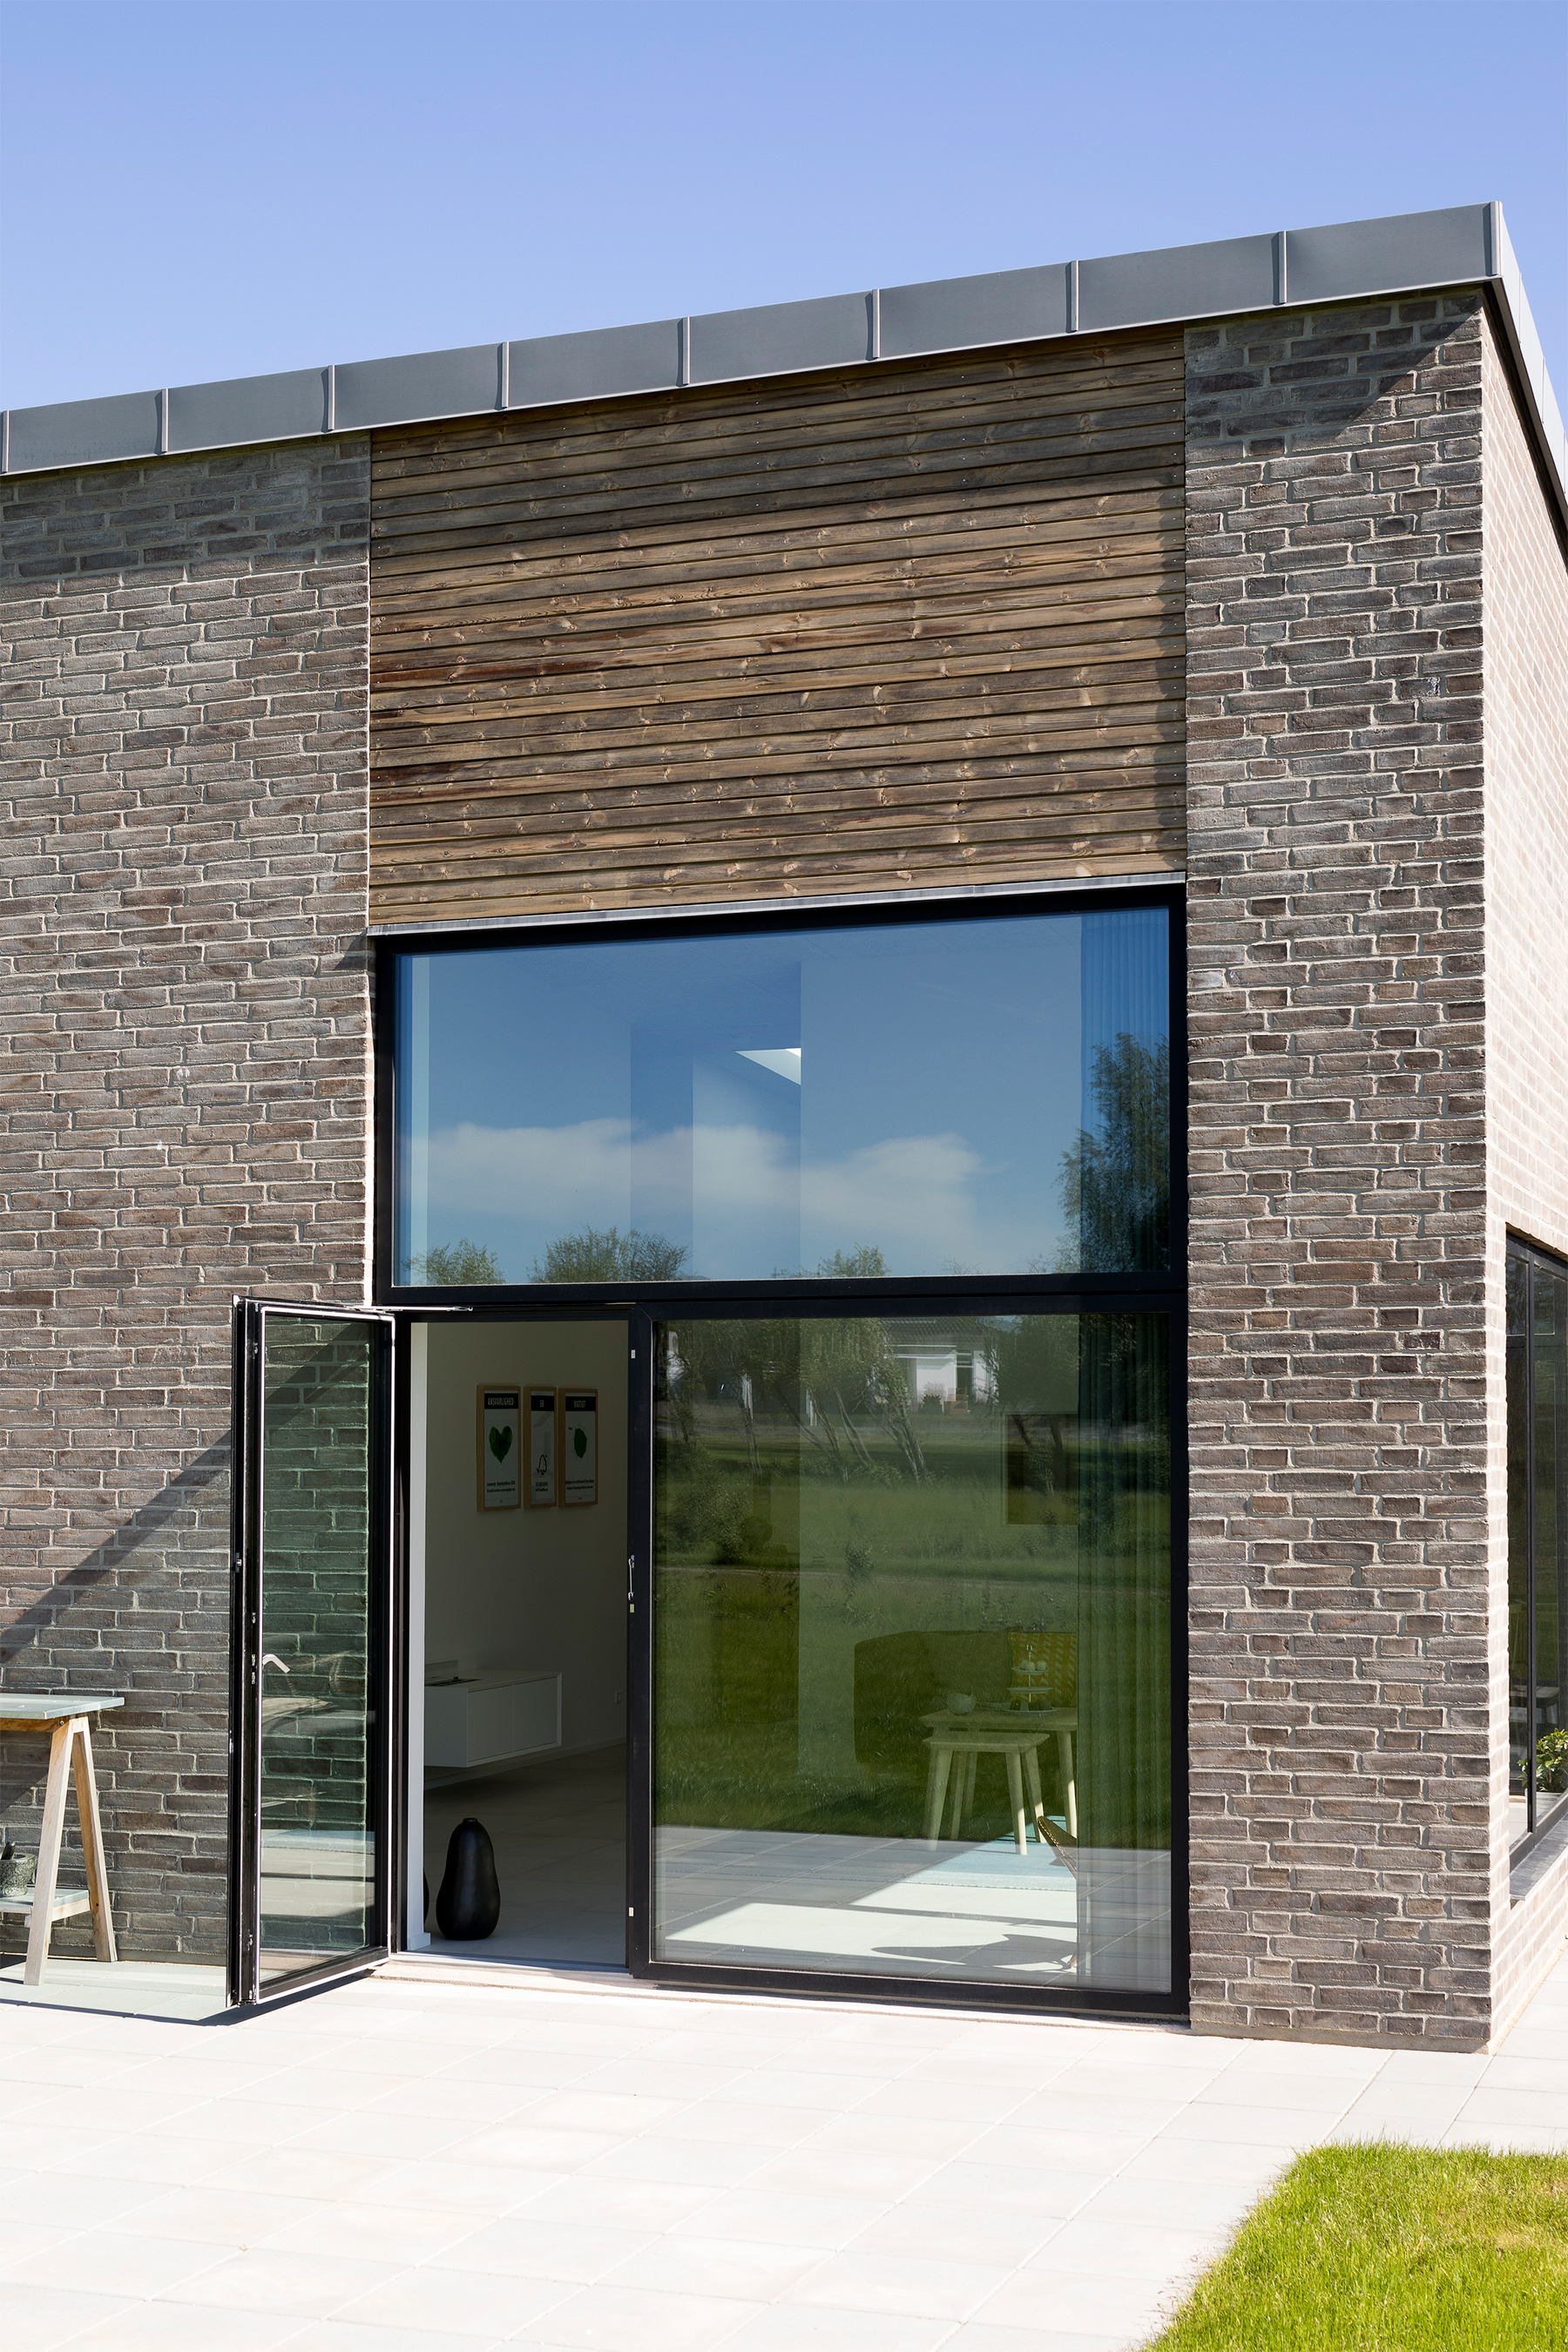 Textúra tehlovej fasády je v kontraste s drevenými profilmi a čiernymi rámami okien a dverí.